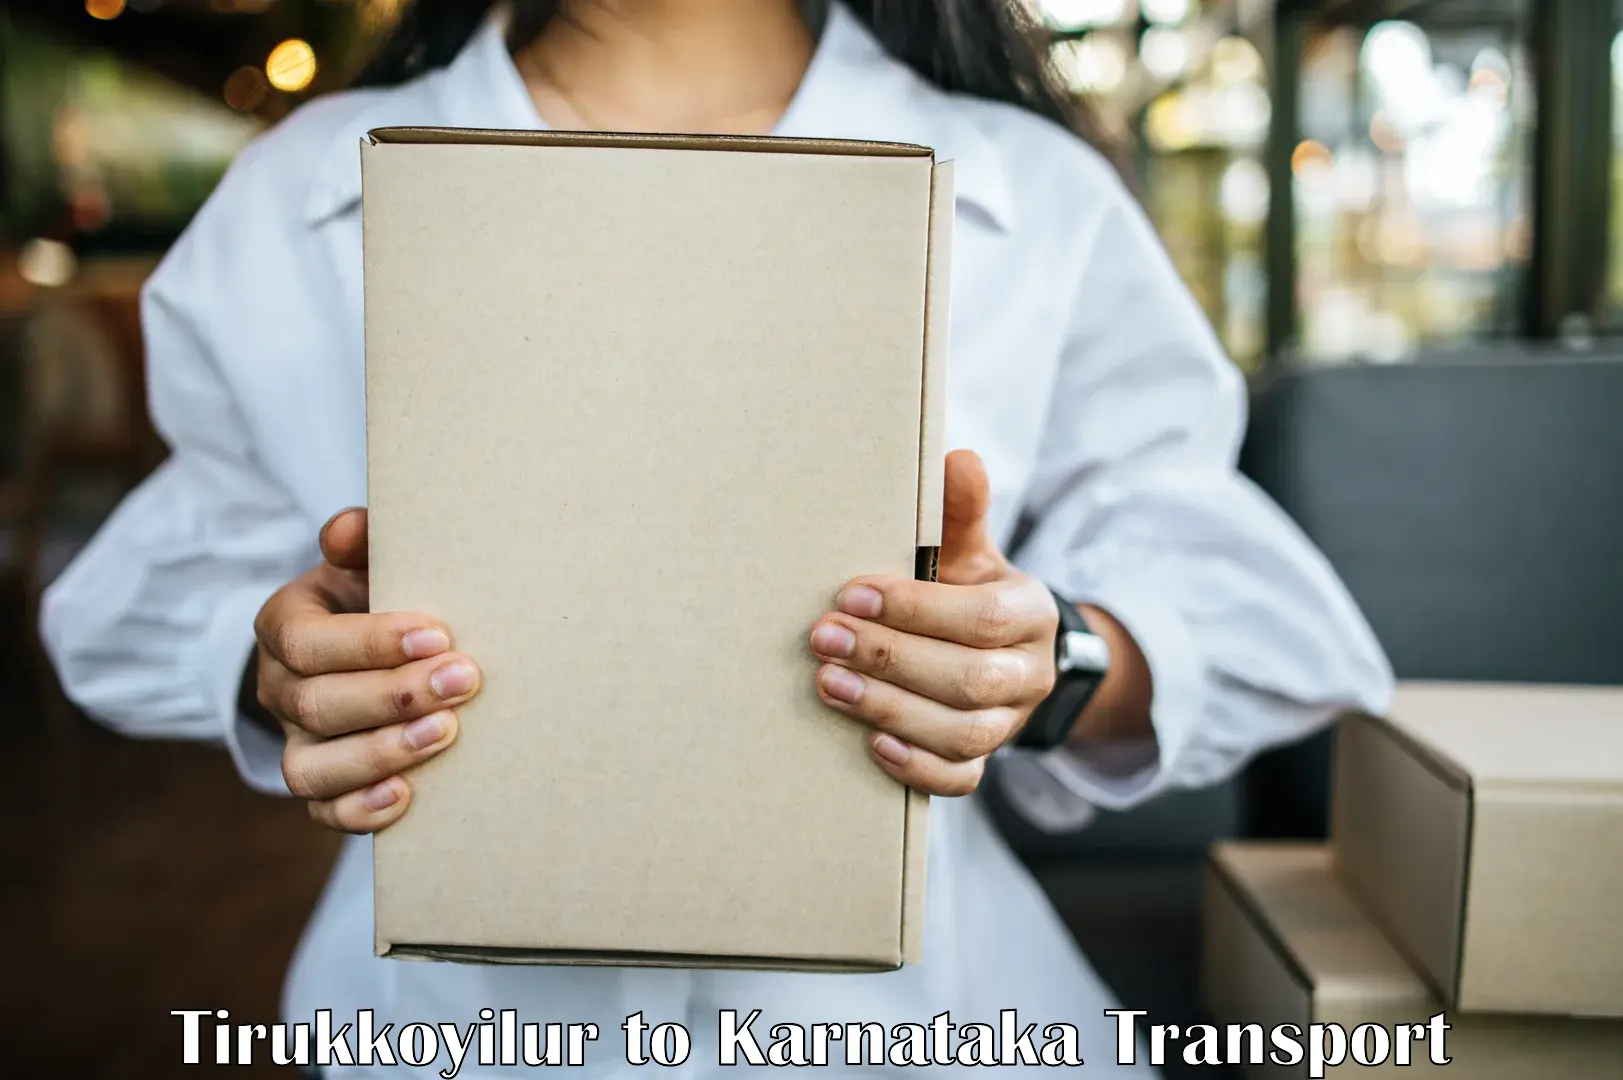 Express transport services Tirukkoyilur to Kerur